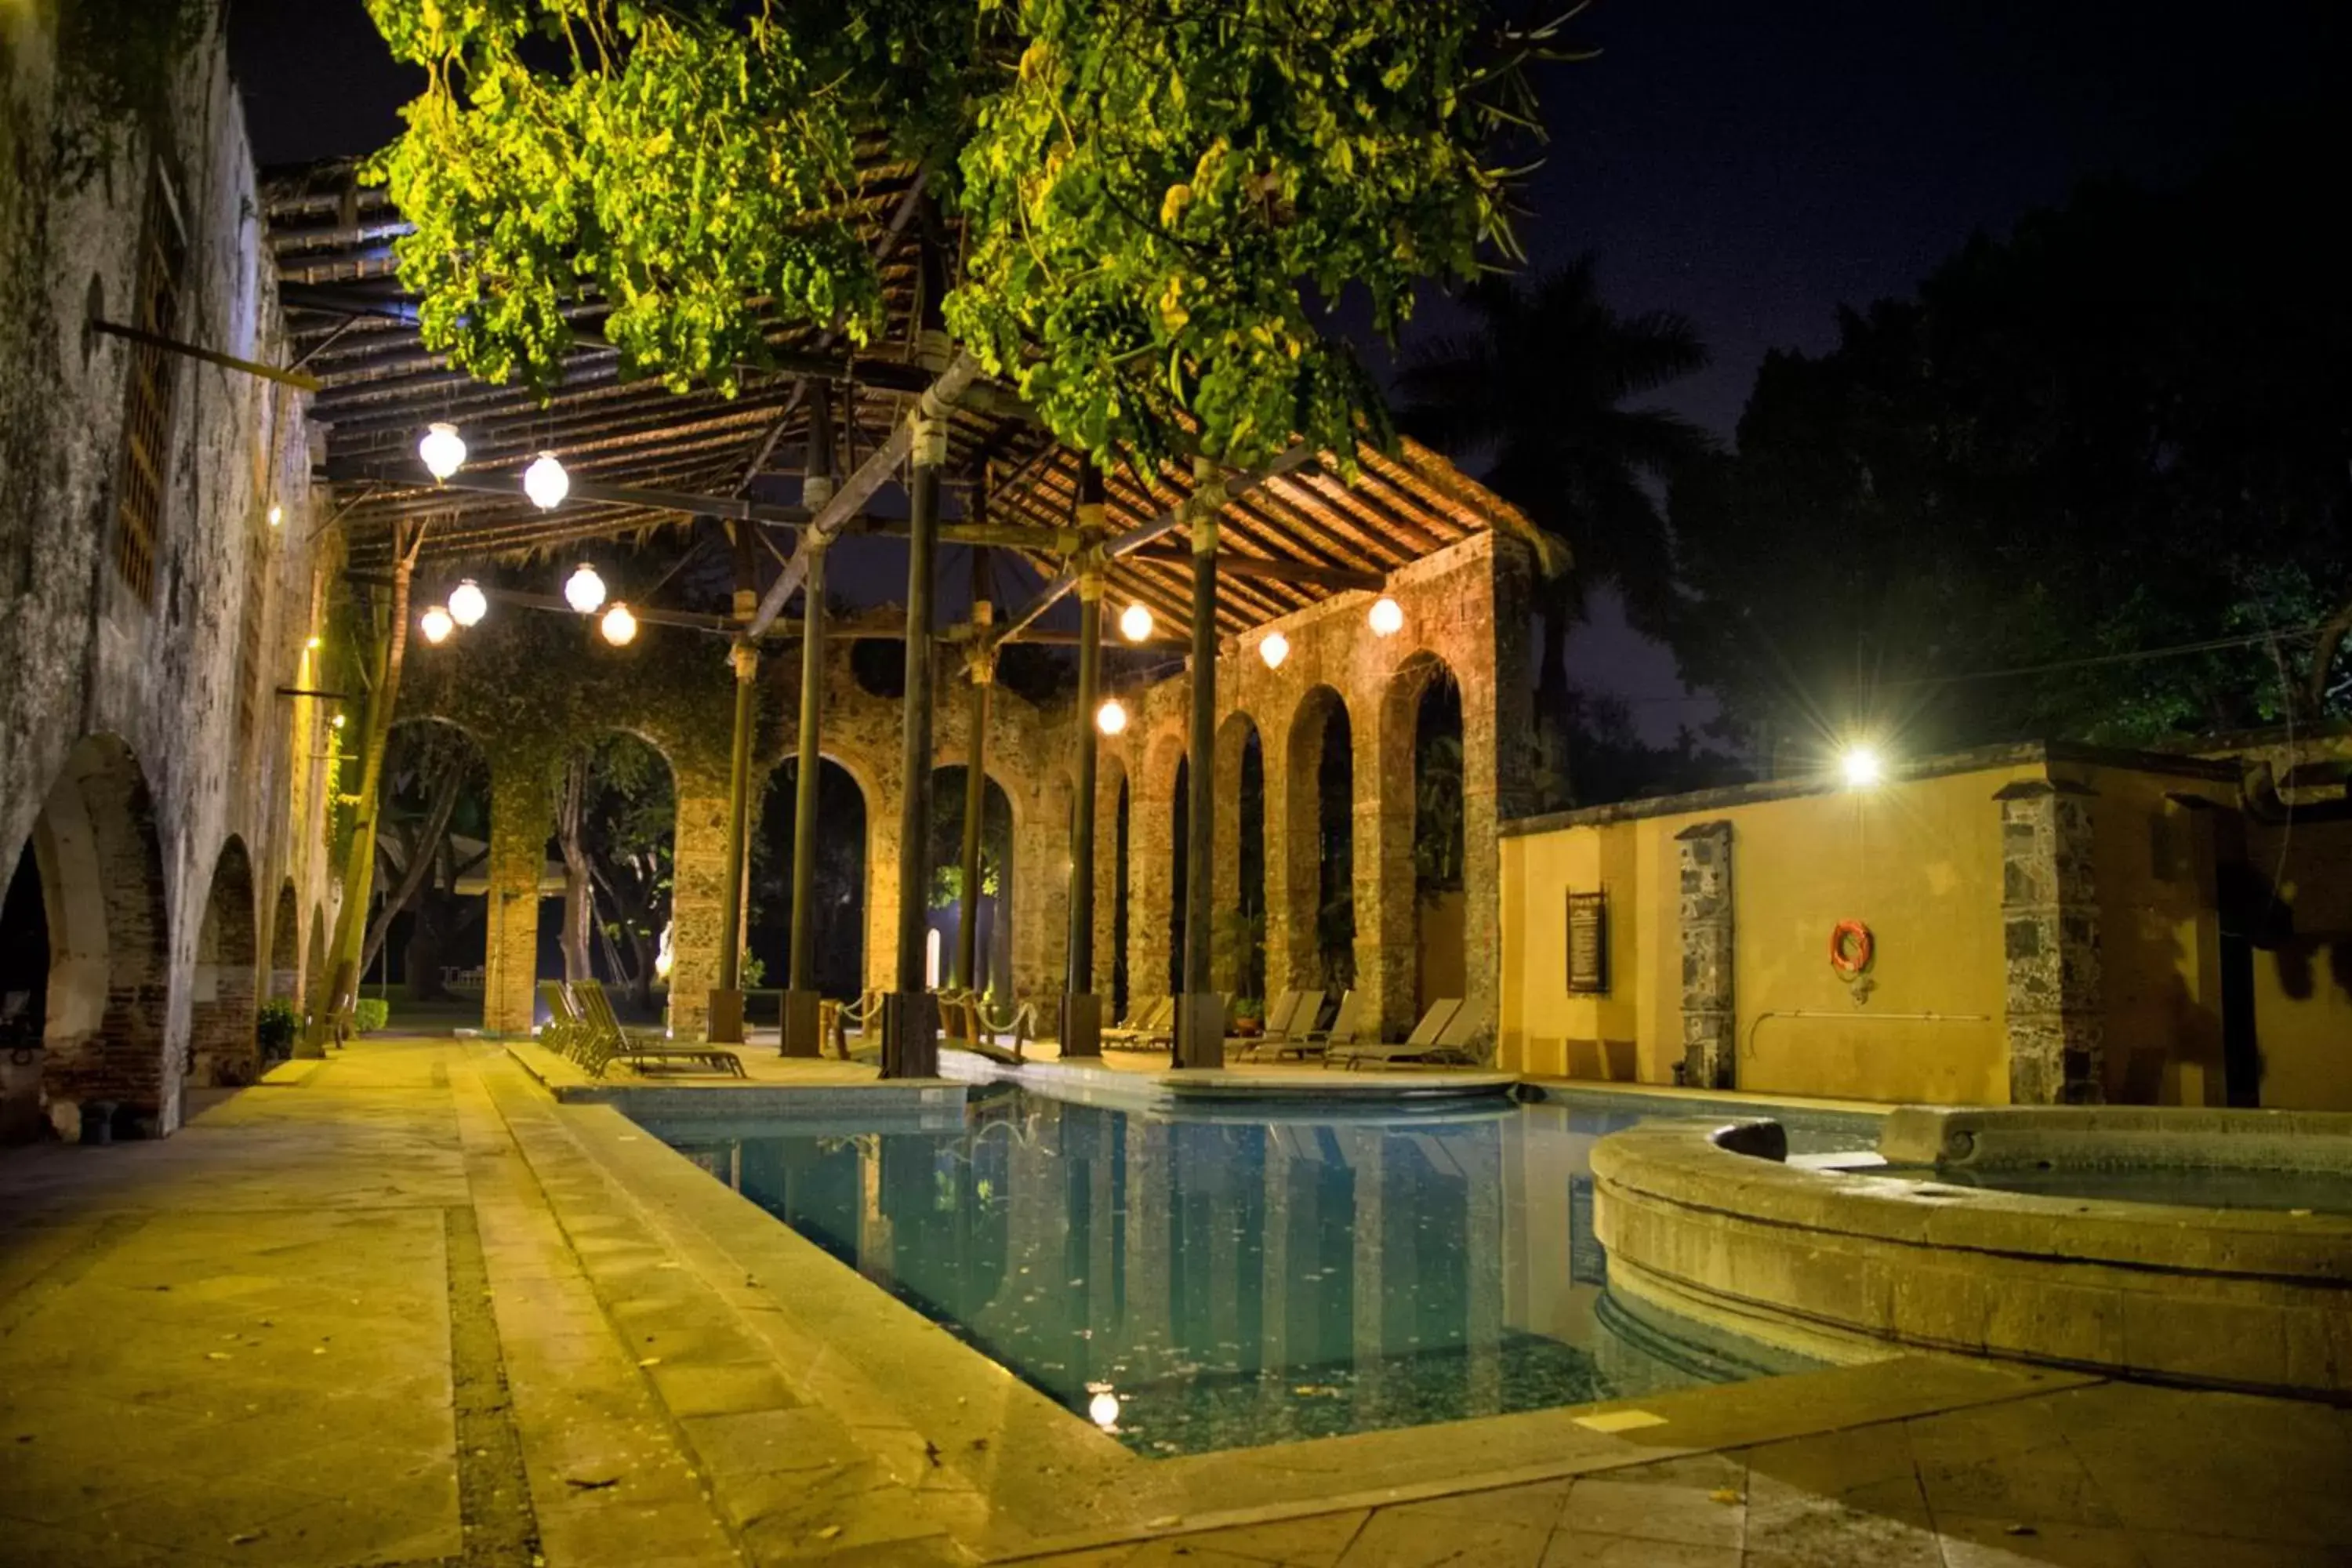 Property building, Swimming Pool in Fiesta Americana Hacienda San Antonio El Puente Cuernavaca